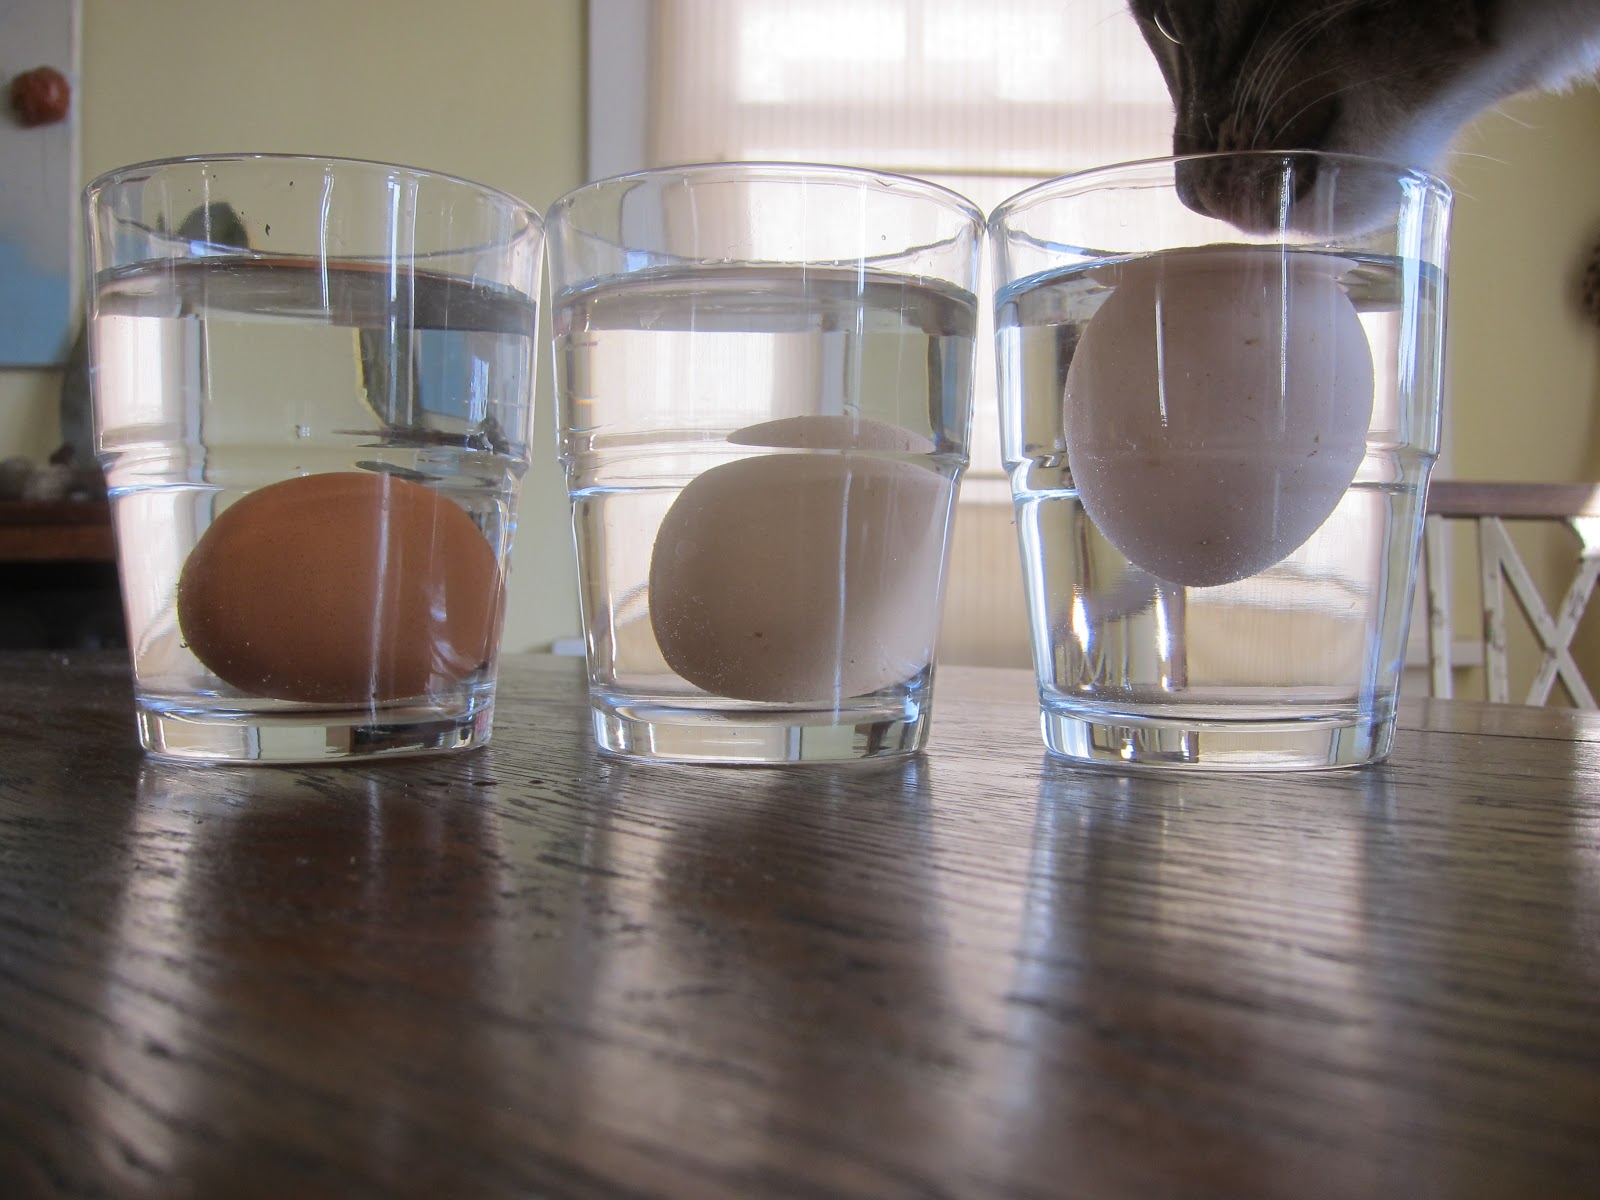 Сколько свежее яйцо. Свежесть яйца в стакане. Яйцо в стакане с водой. Яйцо в стакане с водой свежесть. Свежесть яйца в соленой воде.